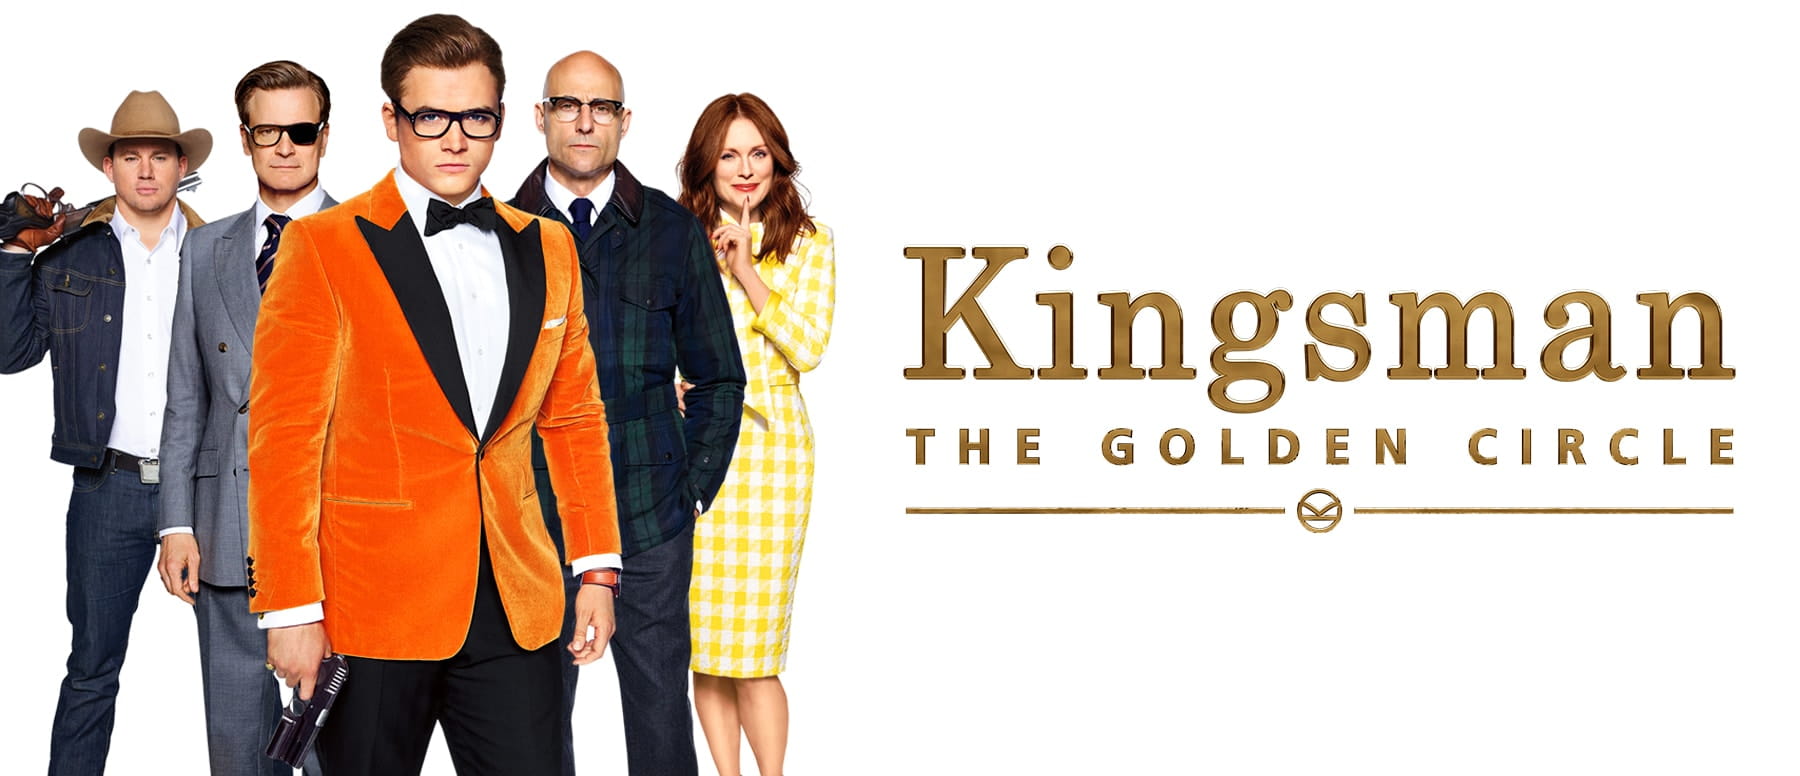 Kingsman The Golden Circle 4K 2017 big poster